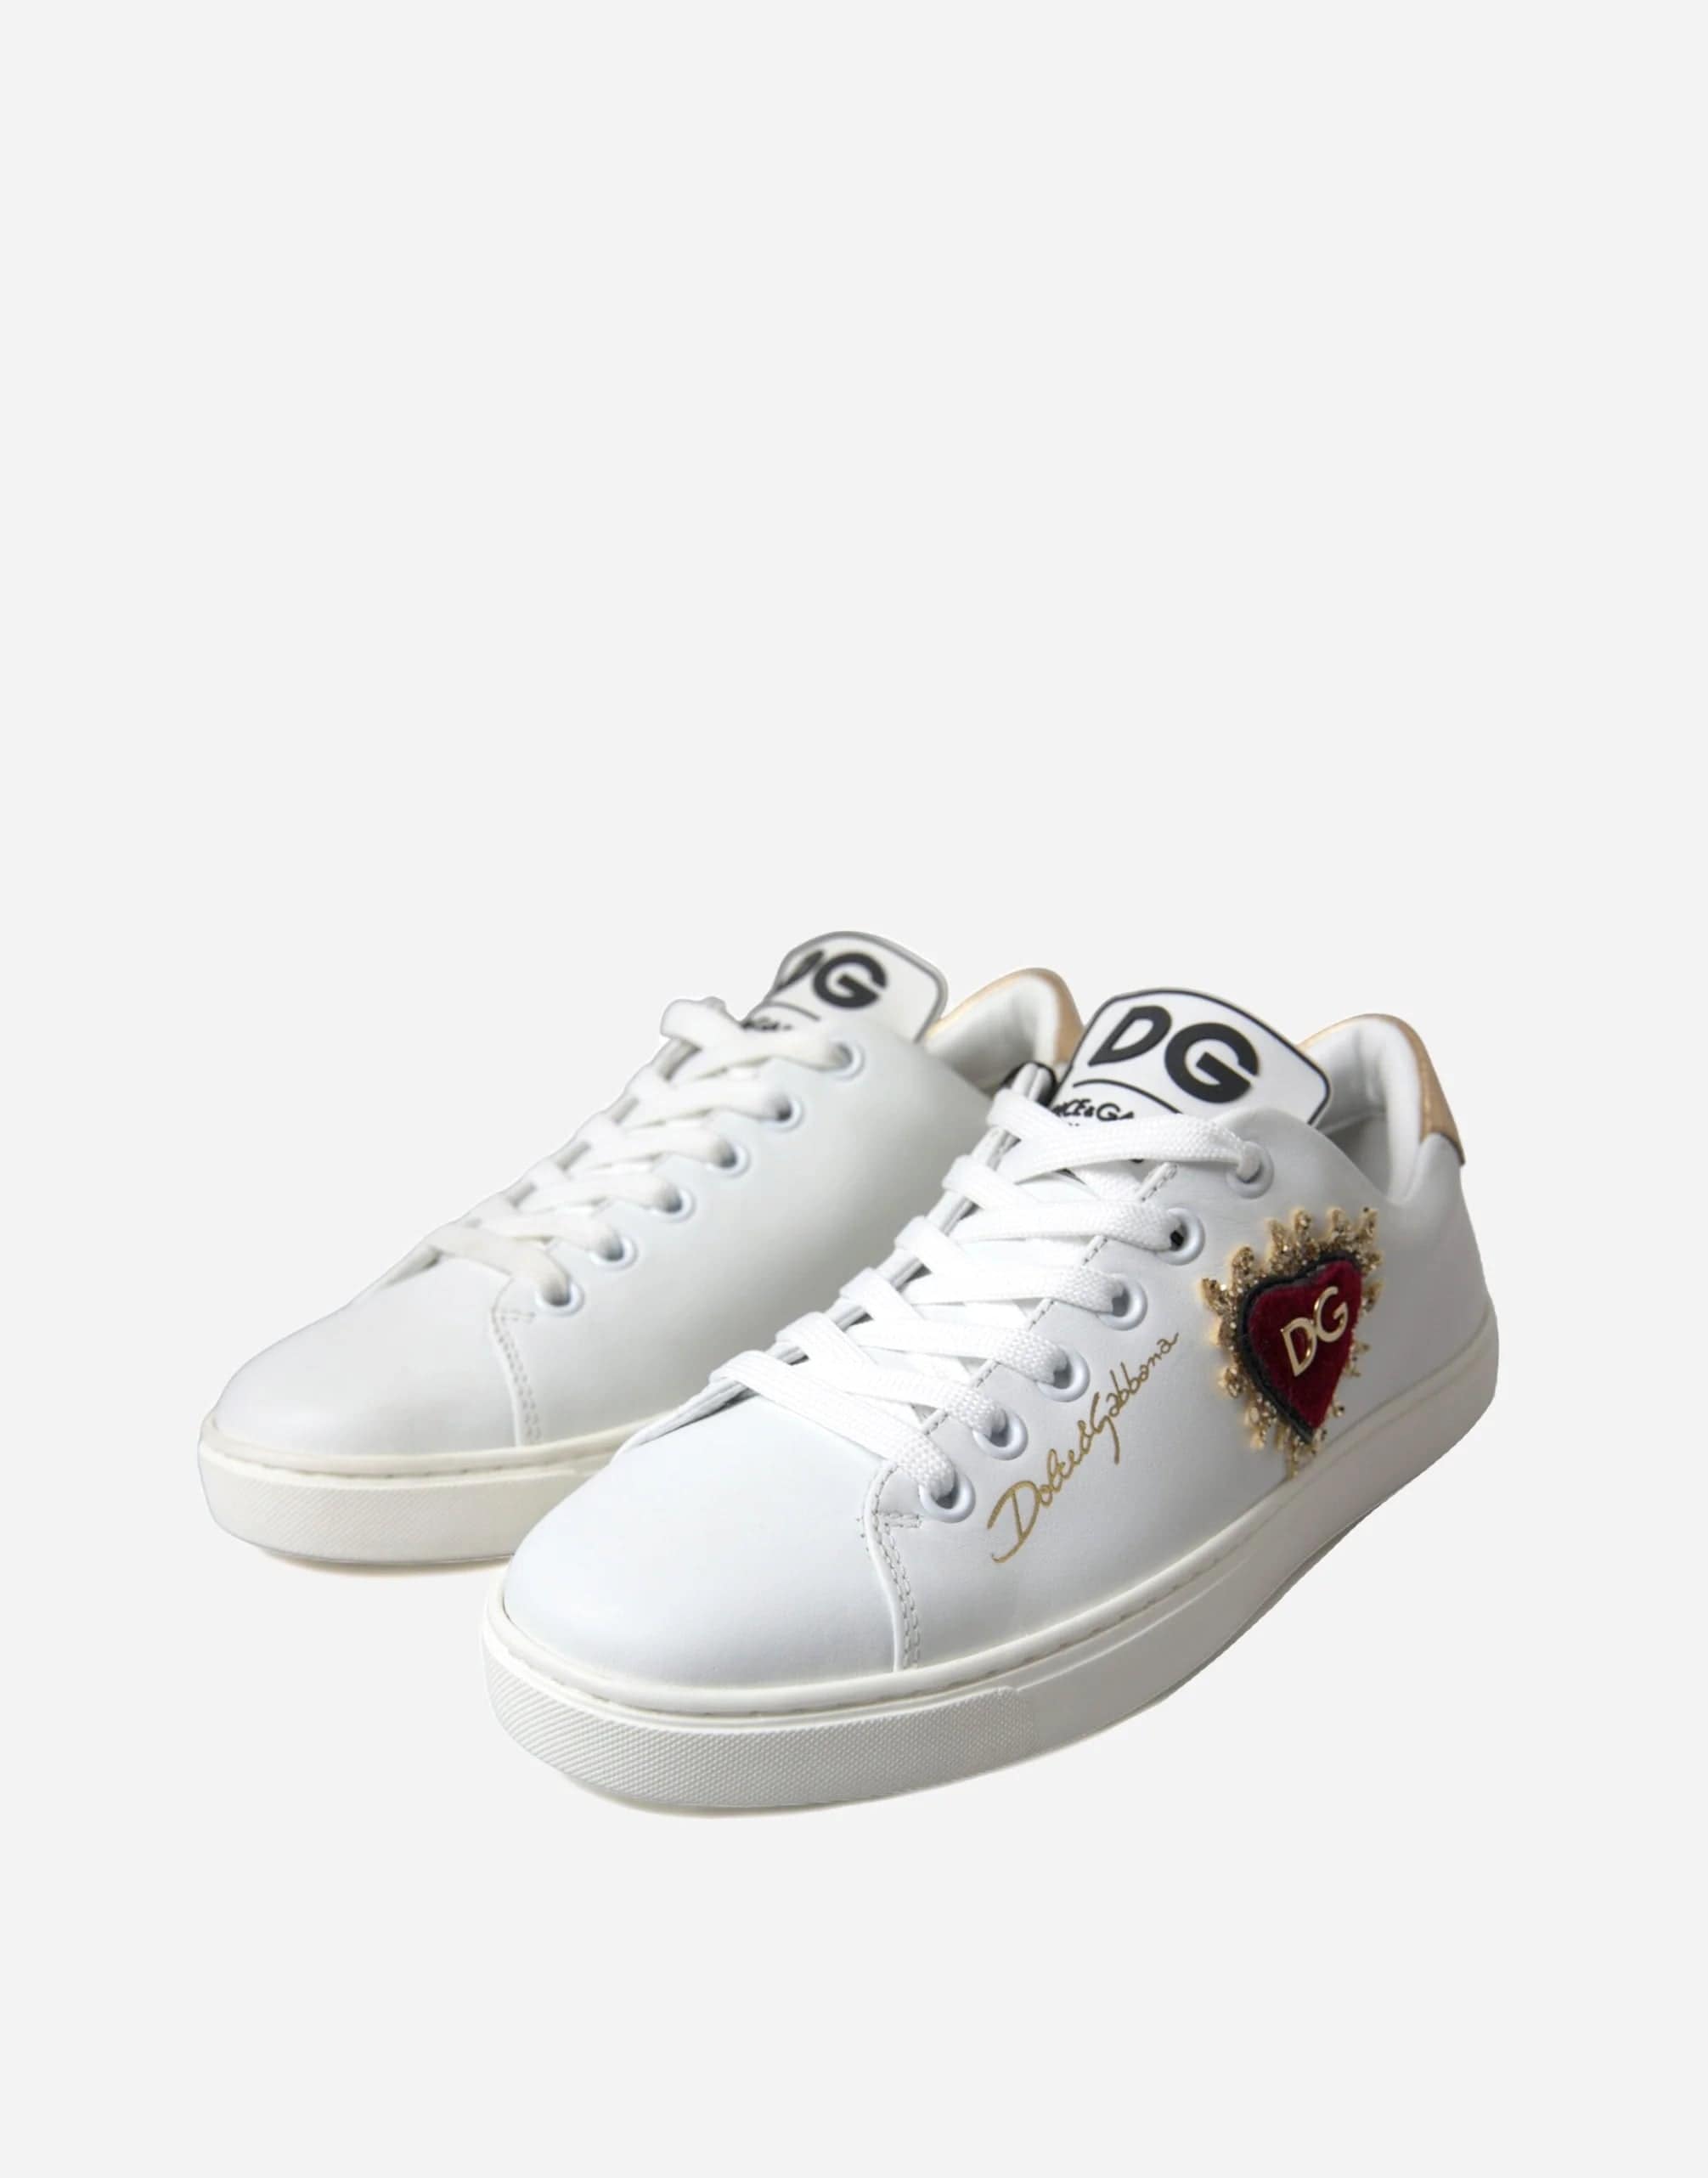 Dolce & Gabbana DG Devotion Heart Sneakers